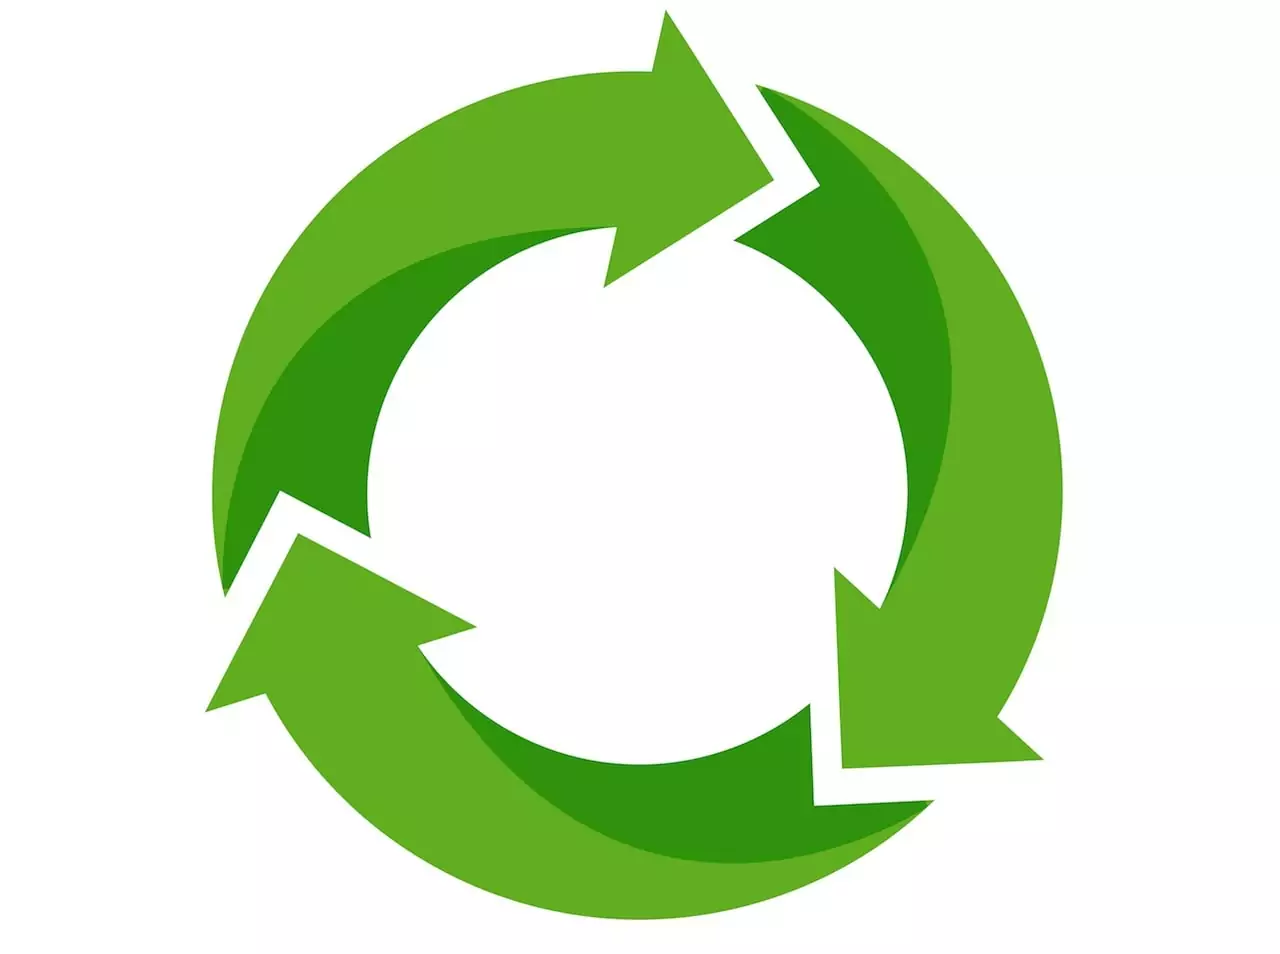 A logística reversa é um dos processos ambientais essenciais para o estabelecimento e funcionamento efetivo da economia circular. E uma de suas principais etapas é a destinação final de resíduos.